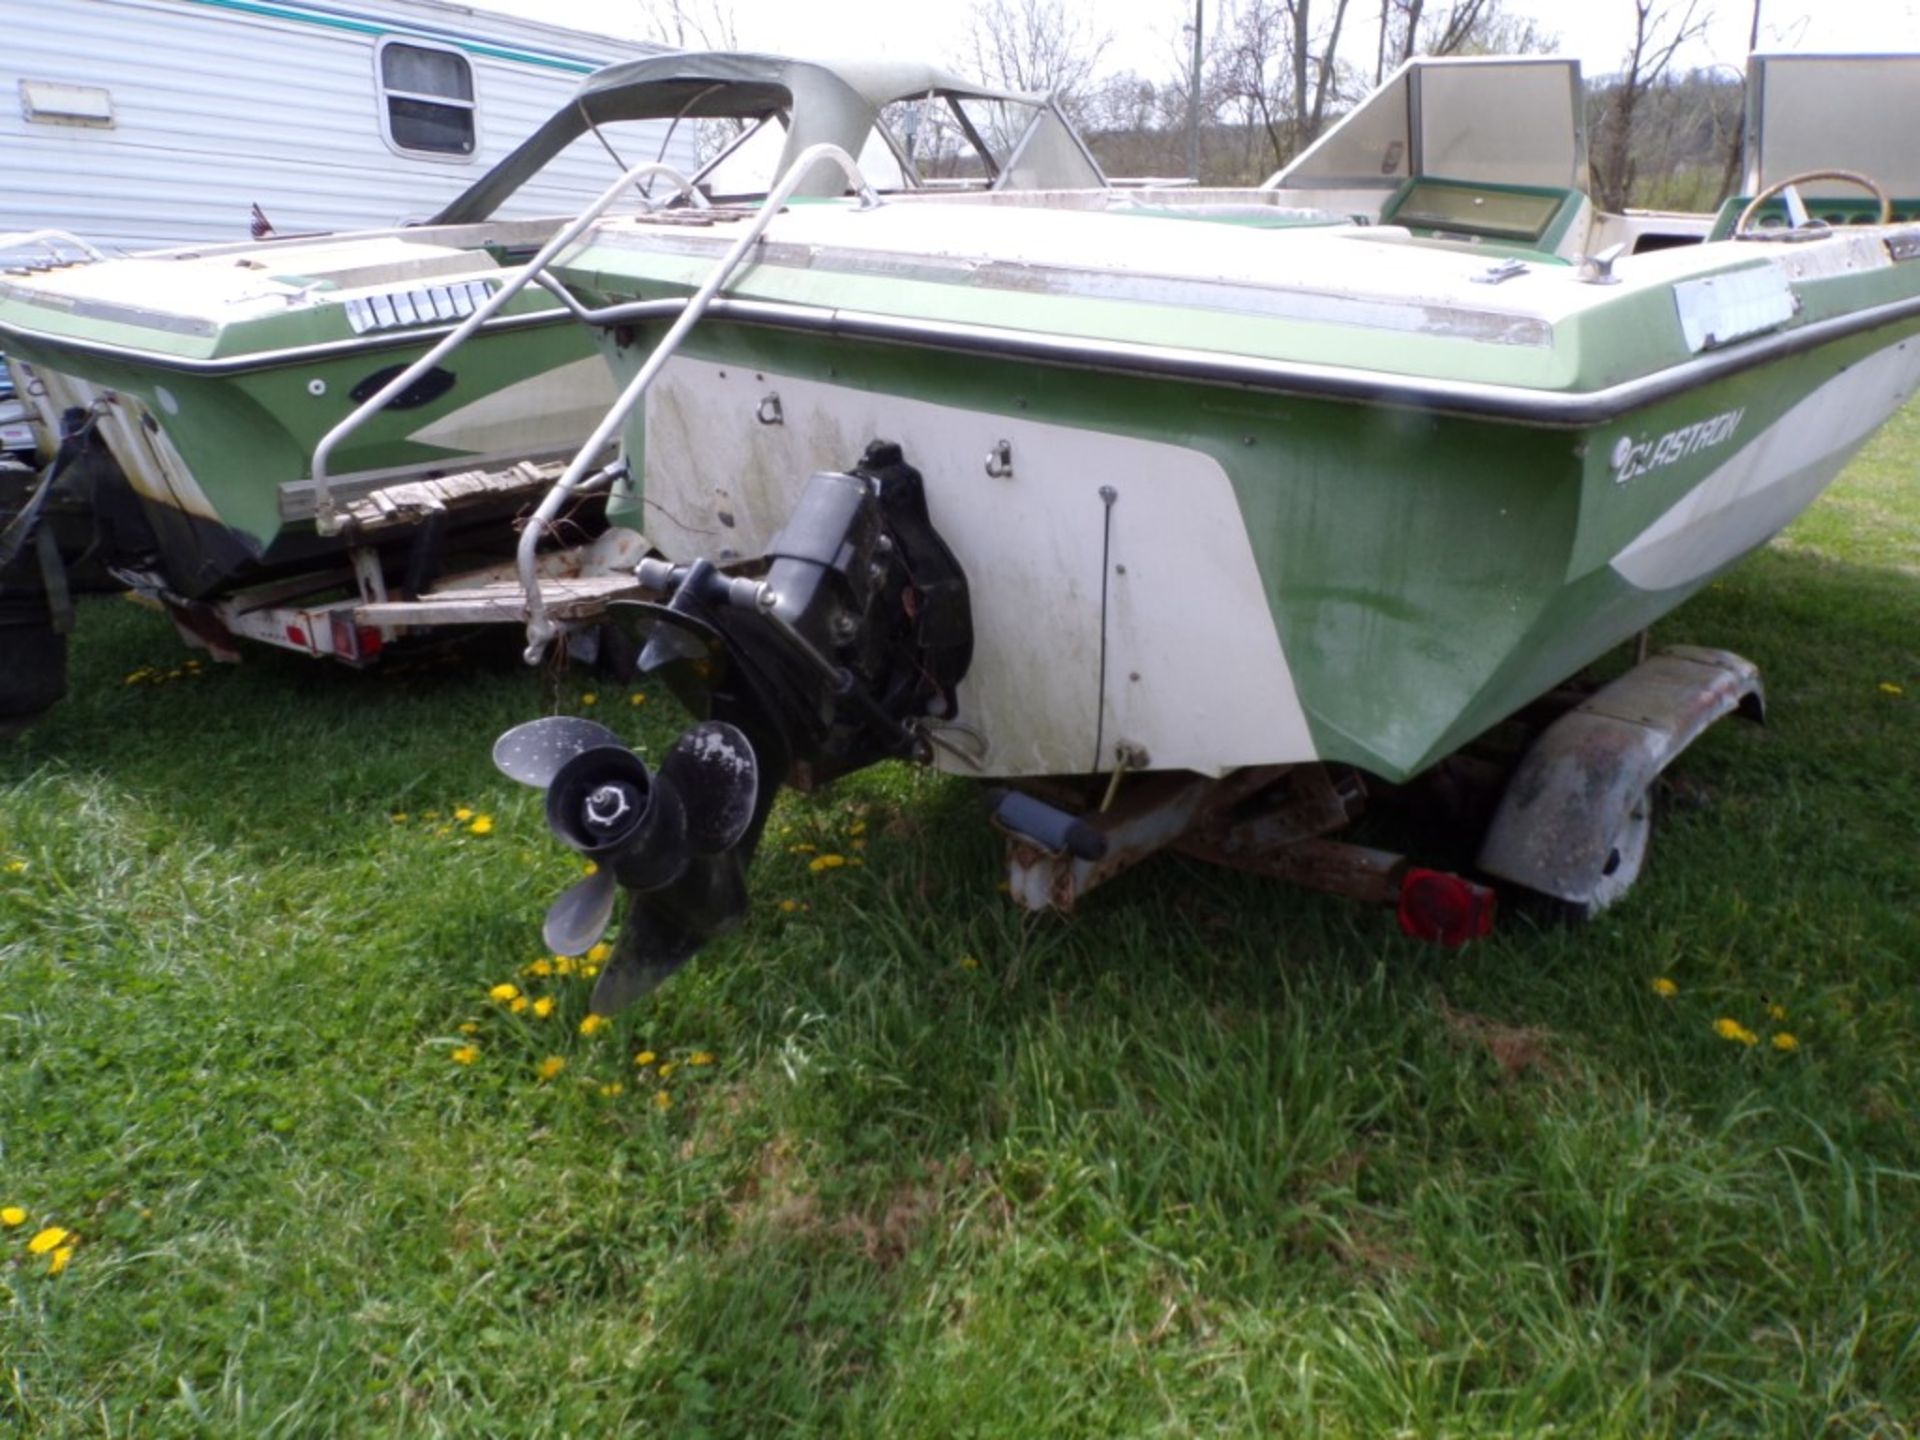 Glastron Closed Bow Fiberglass Boat on Tandem Axle Trailer, 302 Evinrude In Board V-8 (6024) - Image 3 of 4